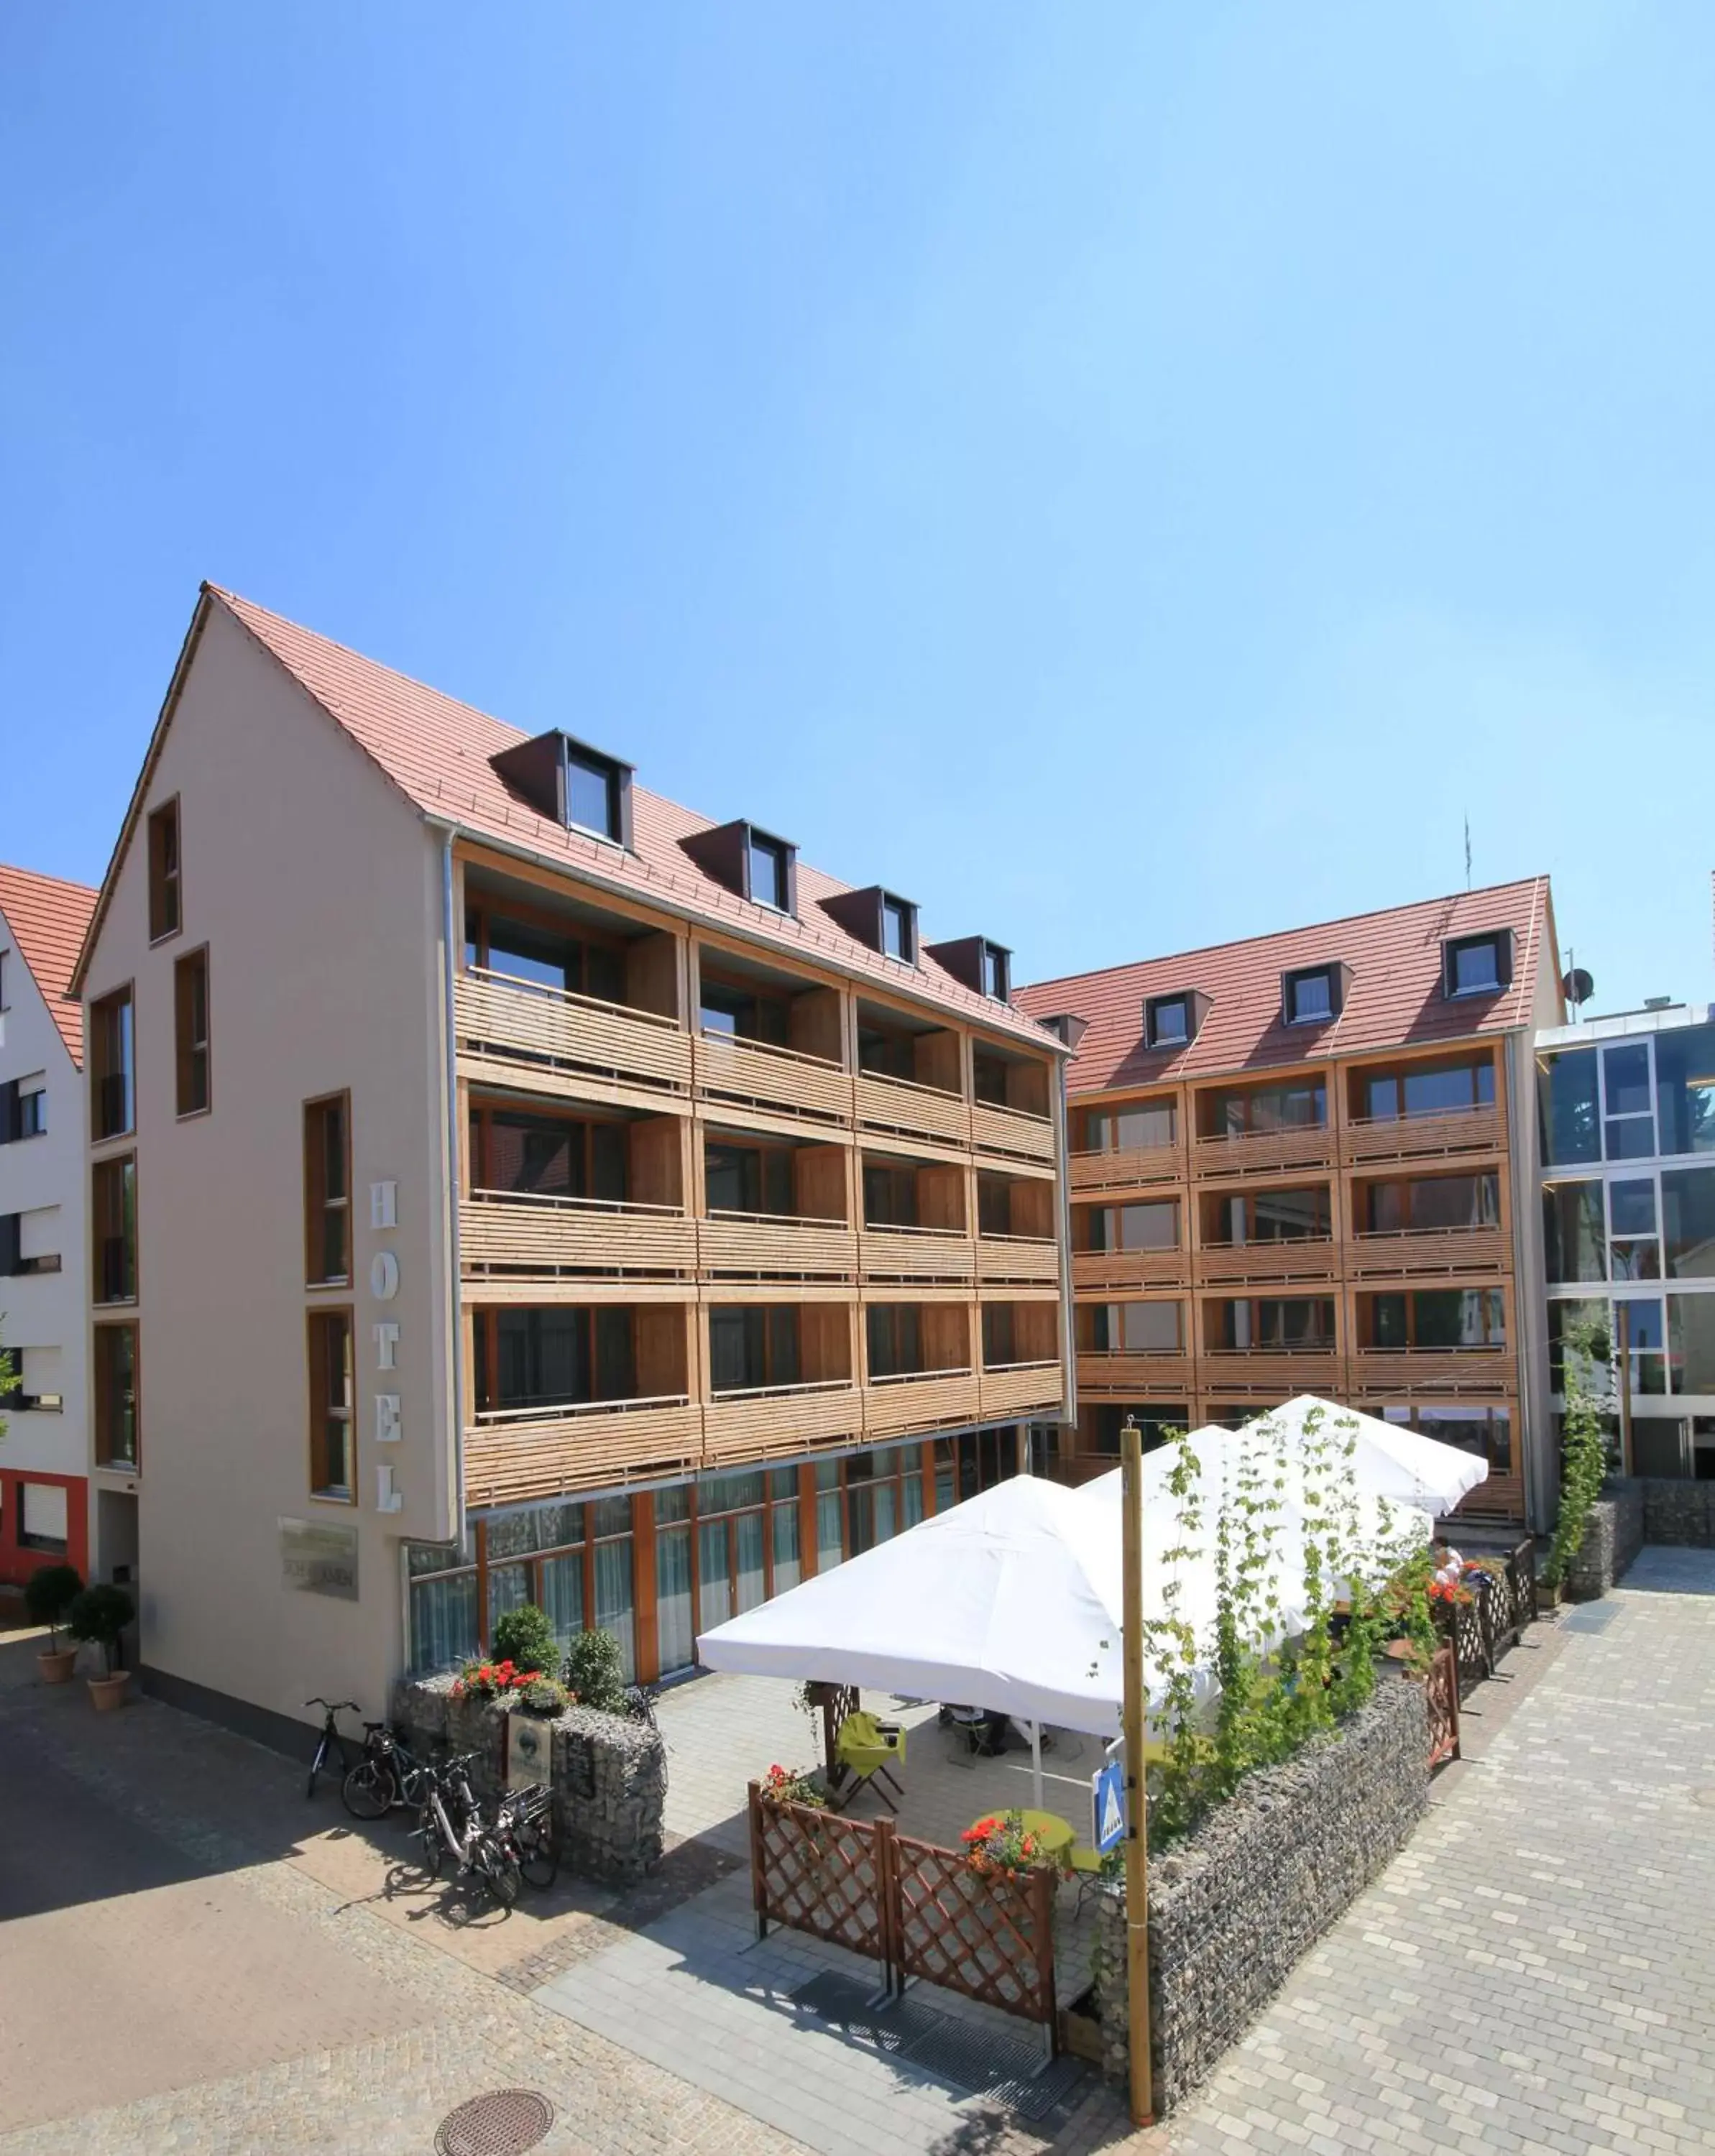 Property Building in Best Western Plus BierKulturHotel Schwanen